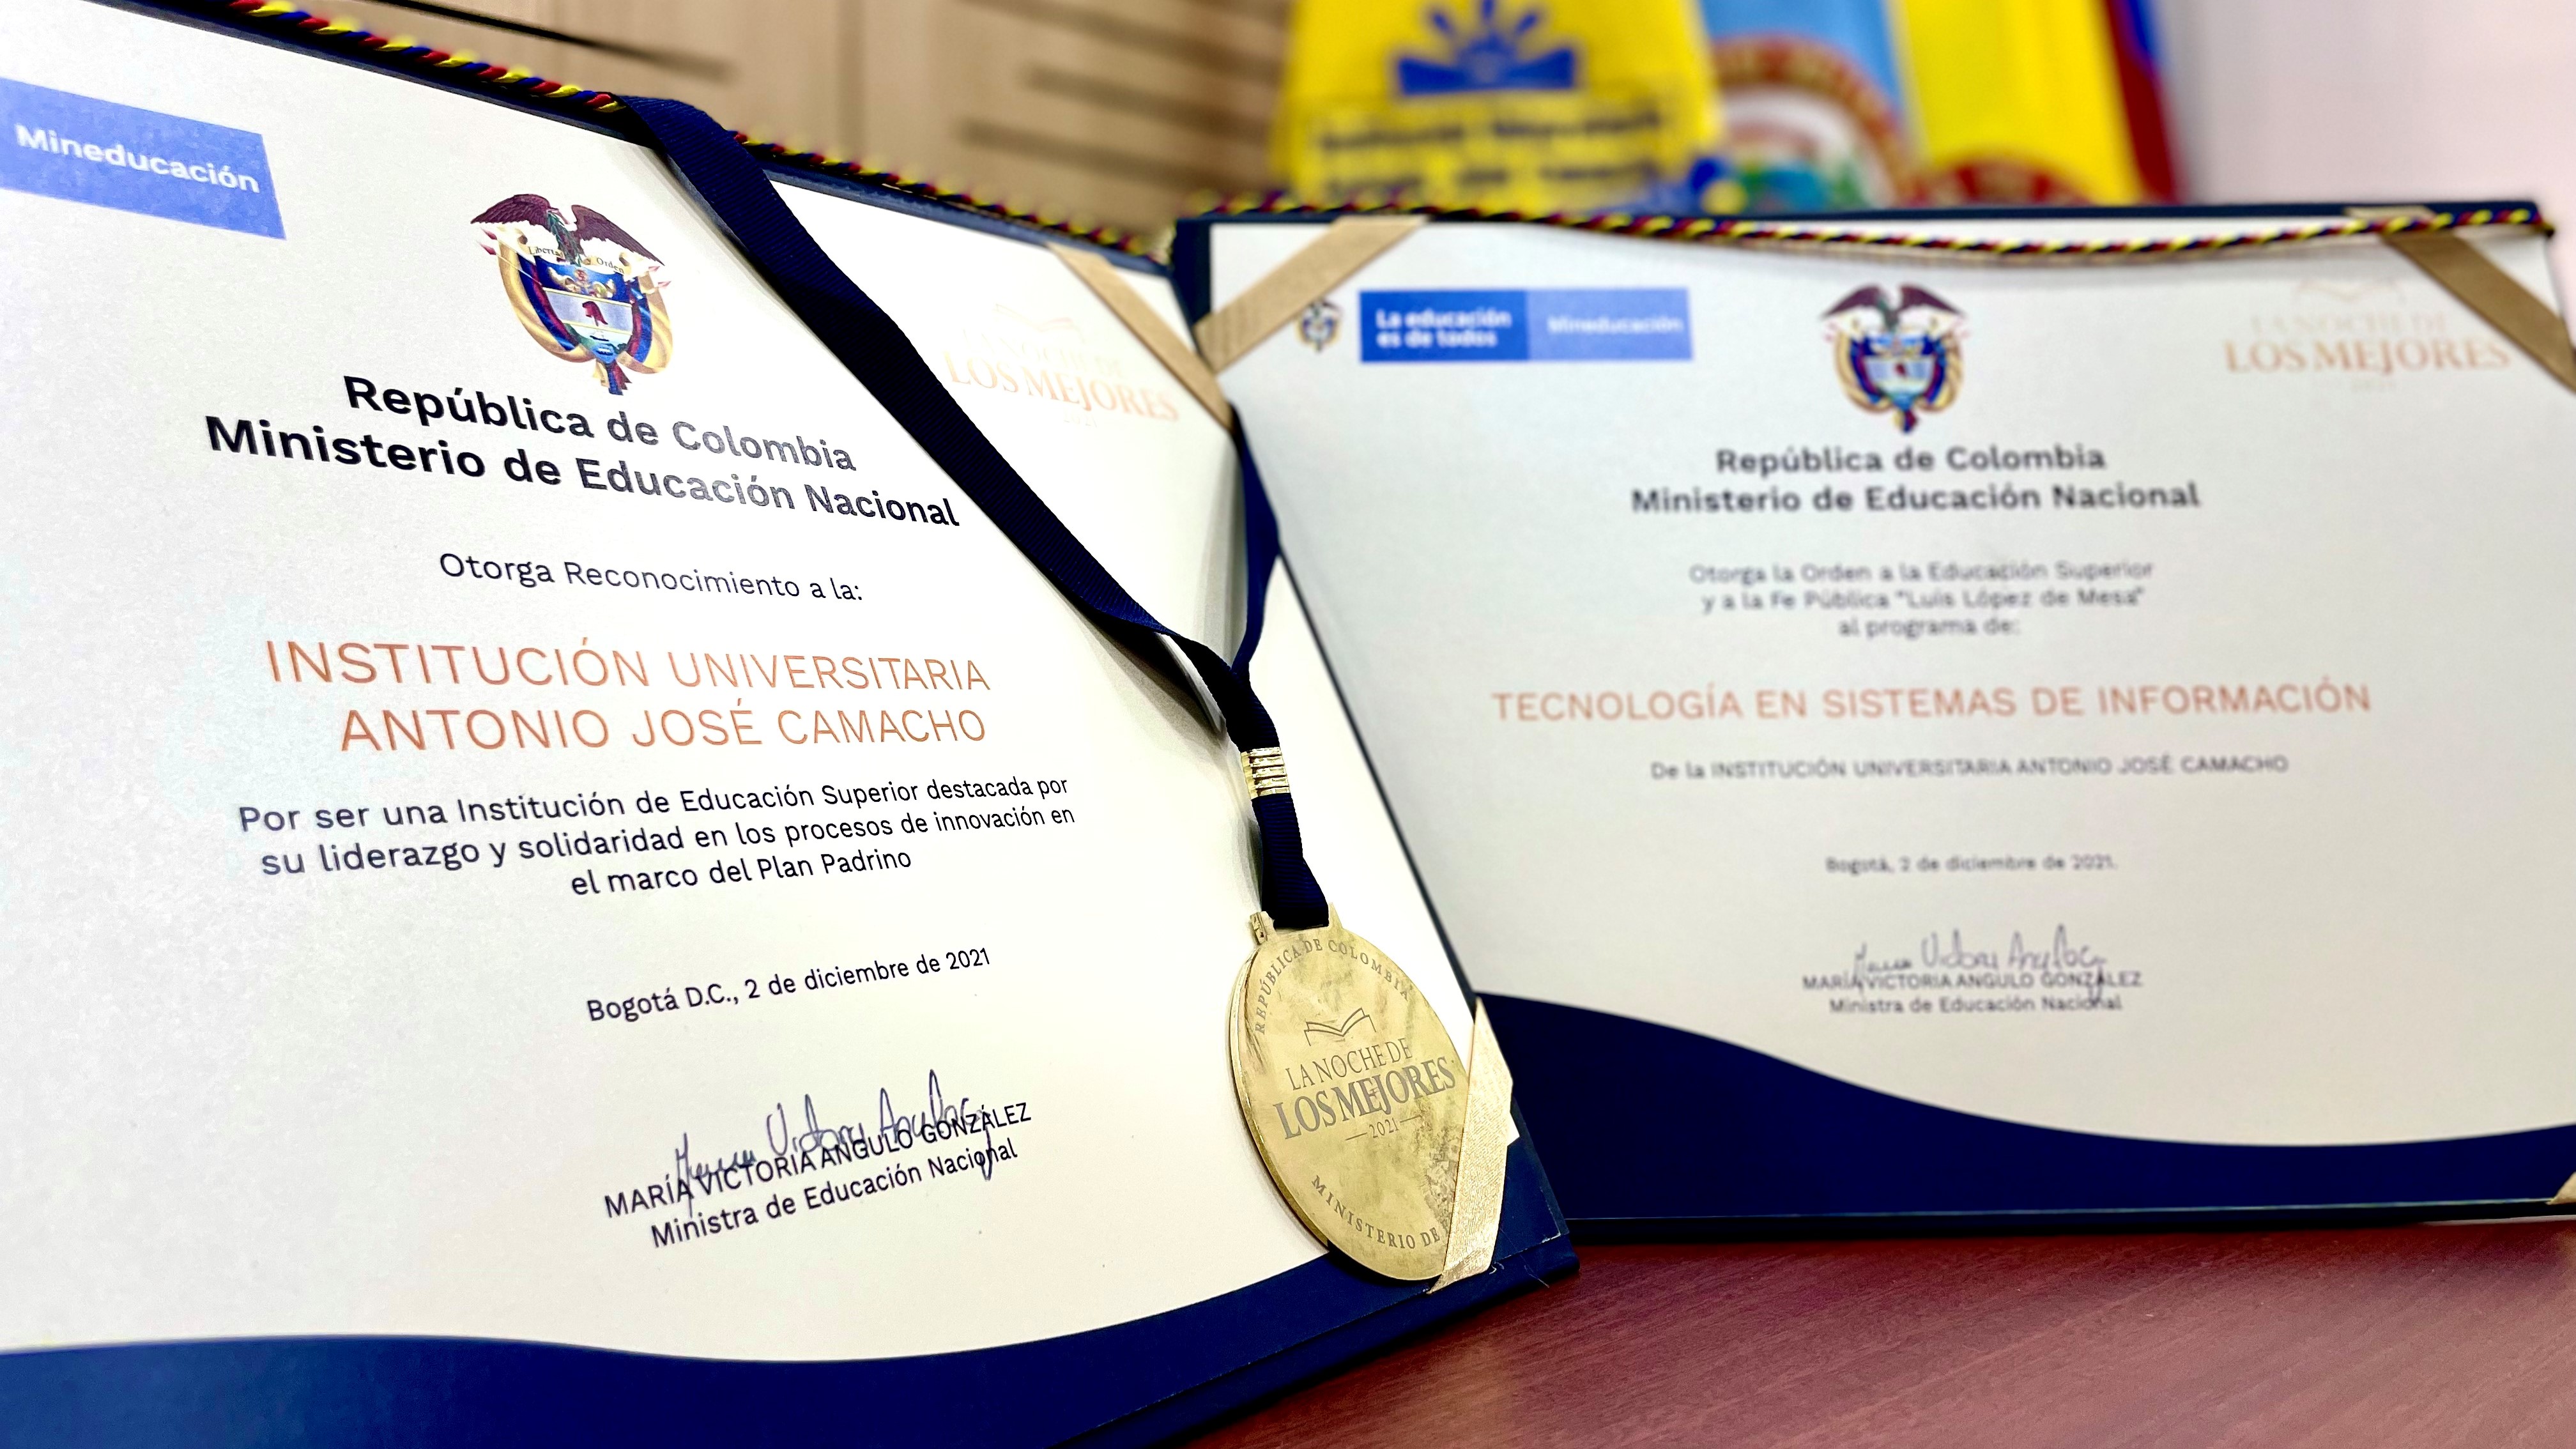 La UniCamacho recibe reconocimientos por el Gobierno Nacional